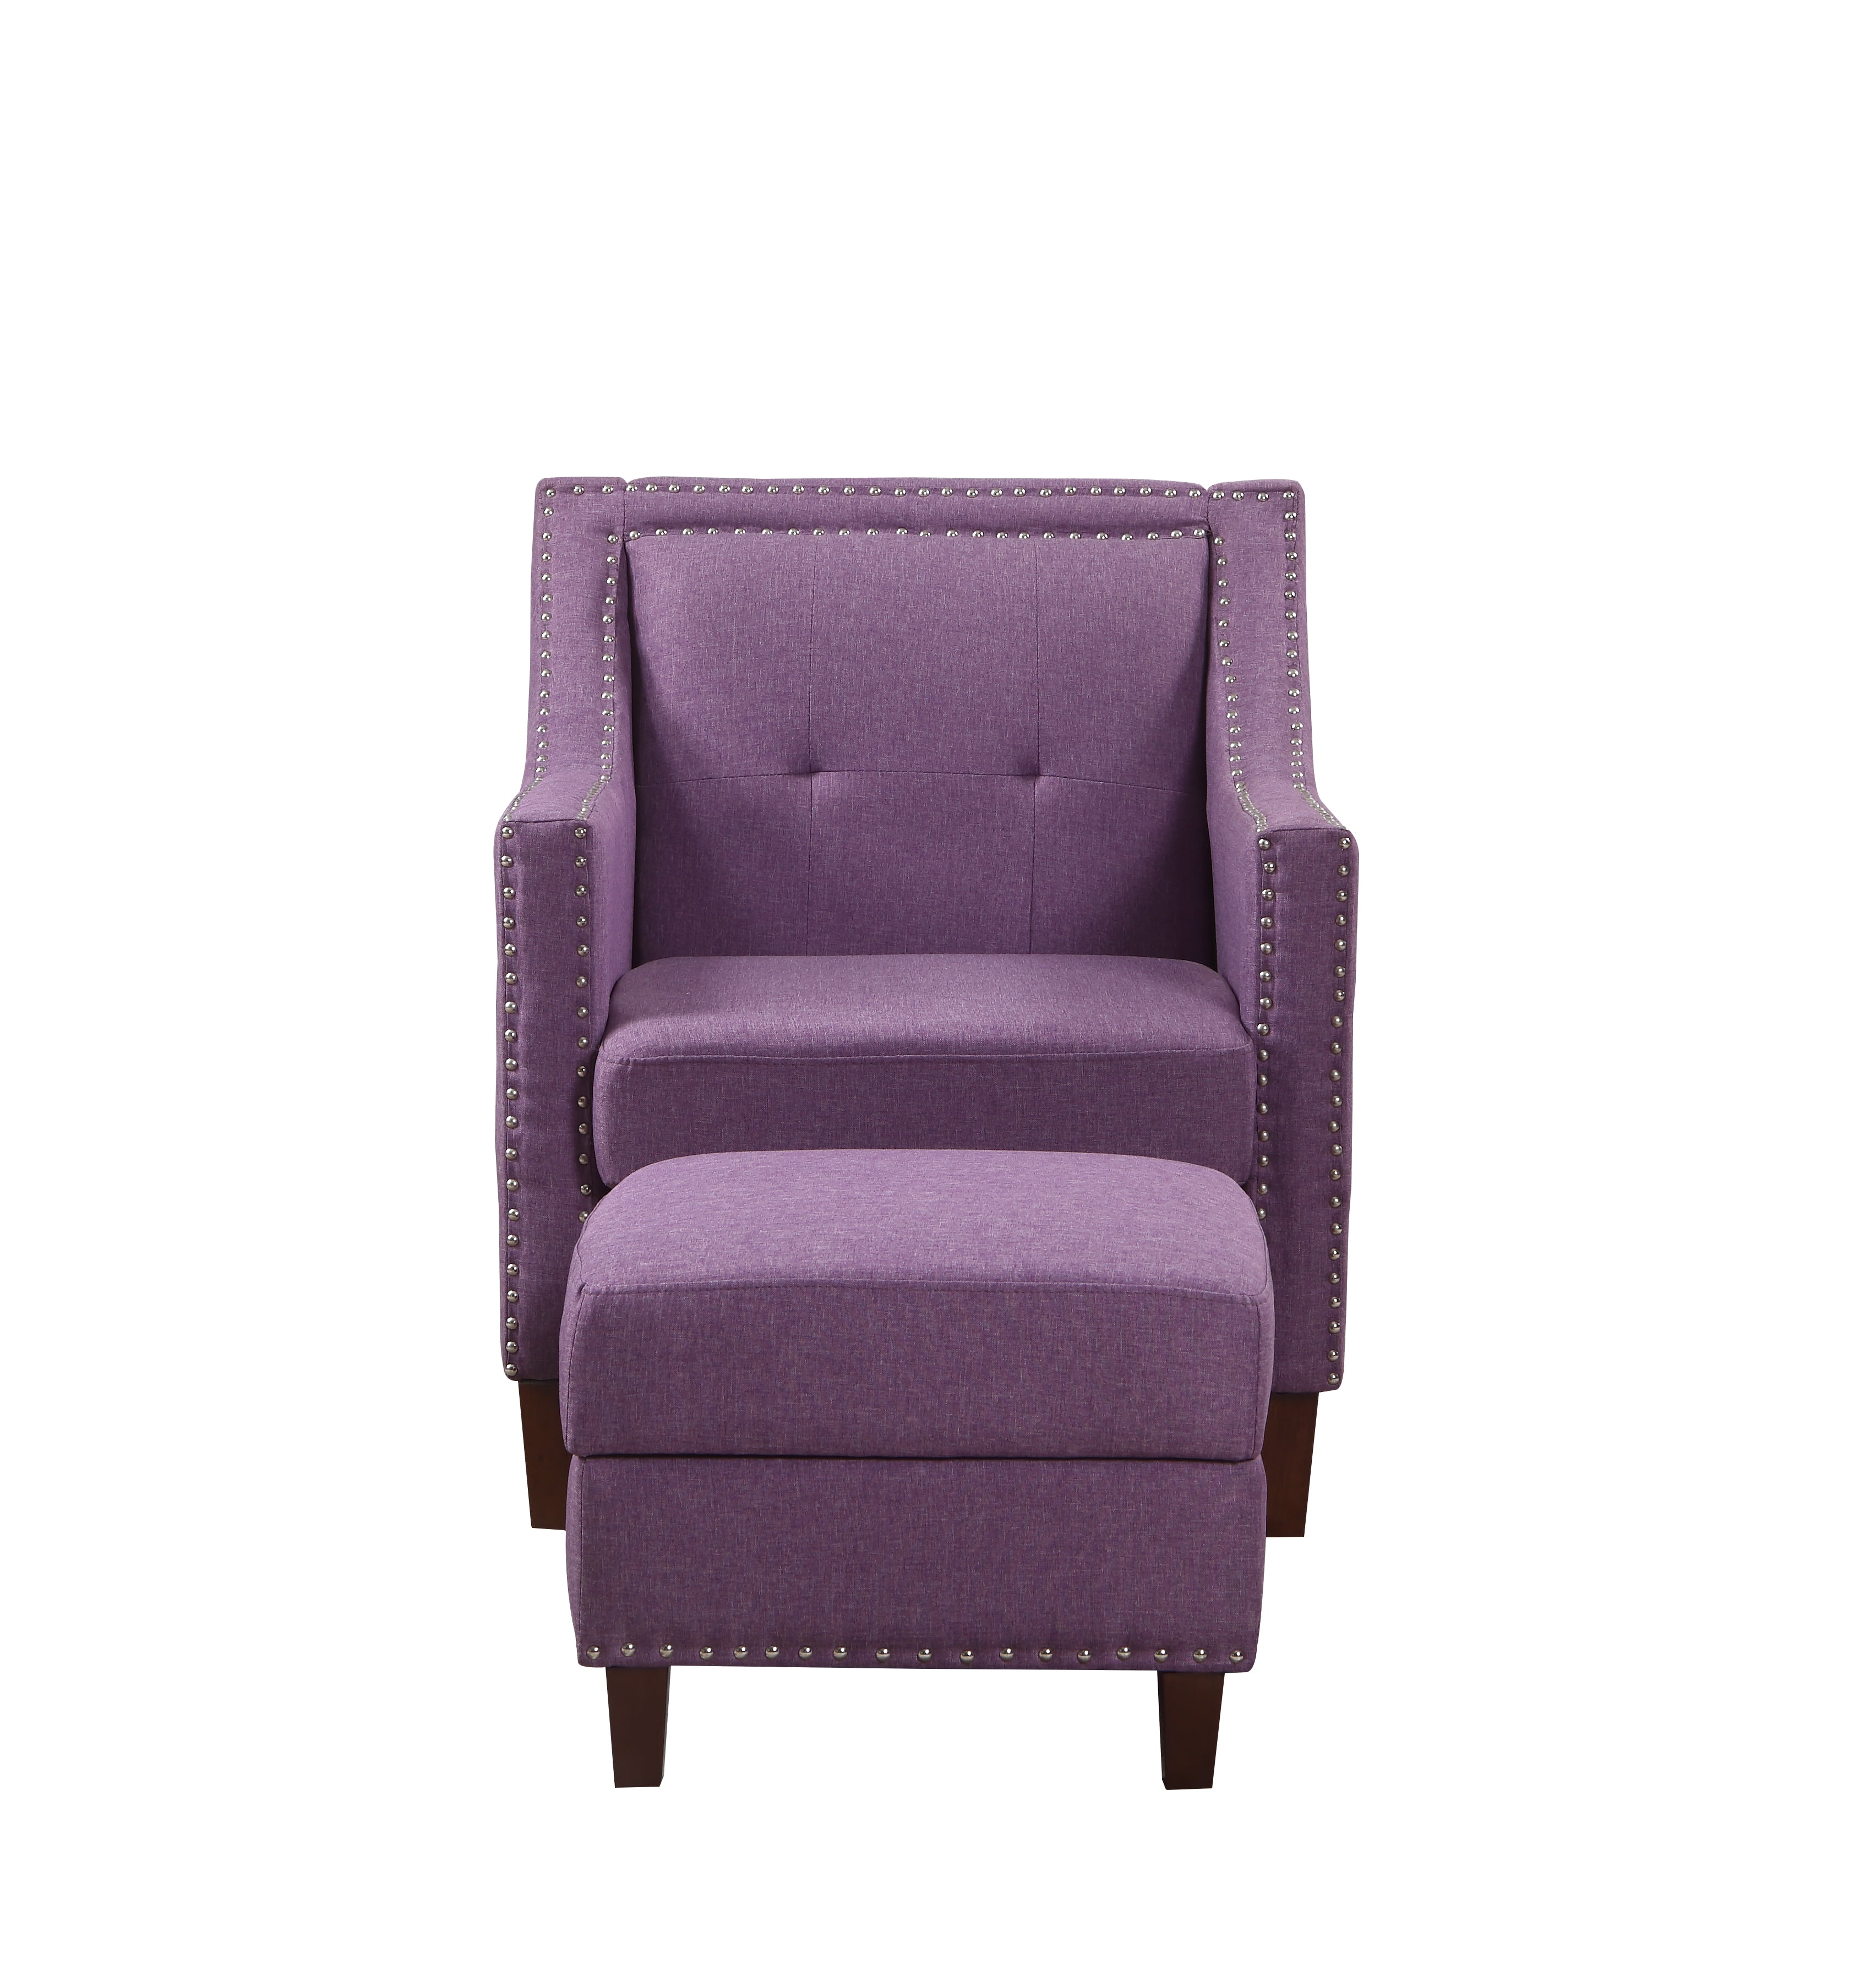 accent chair with storage ottoman purple  walmart